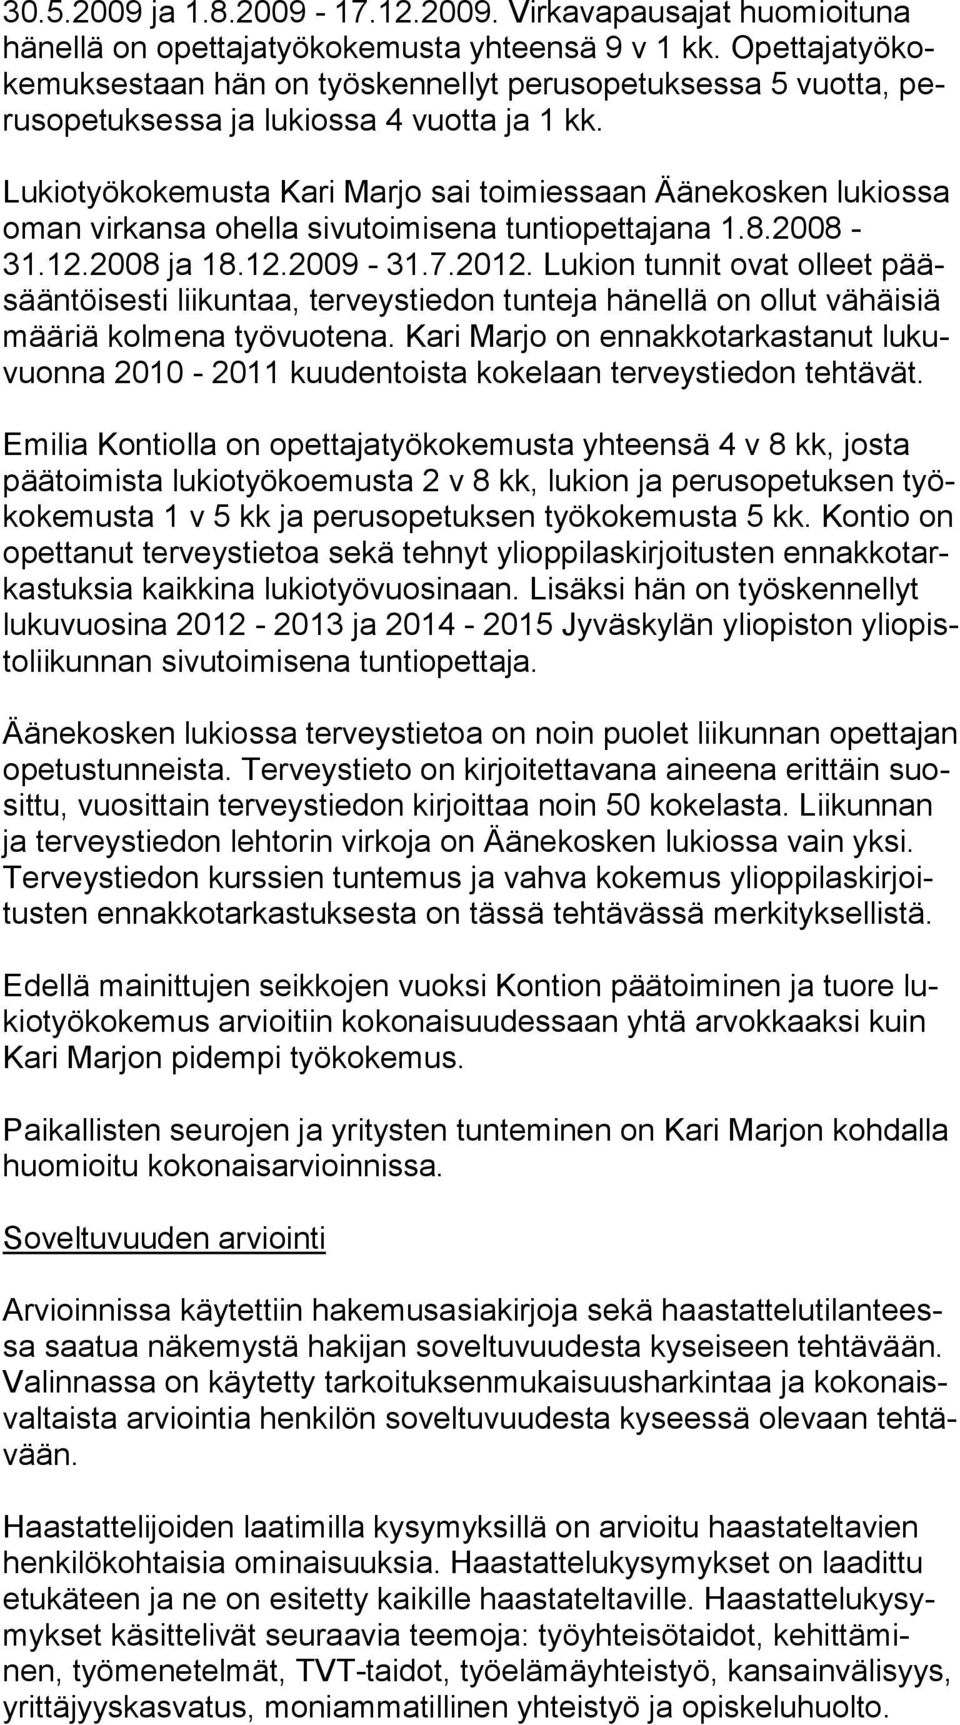 Lukiotyökokemusta Ka ri Marjo sai toimiessaan Äänekosken lukiossa oman virkansa ohel la sivutoimisena tuntiopettajana 1.8.2008-31.12.2008 ja 18.12.2009-31.7.2012.